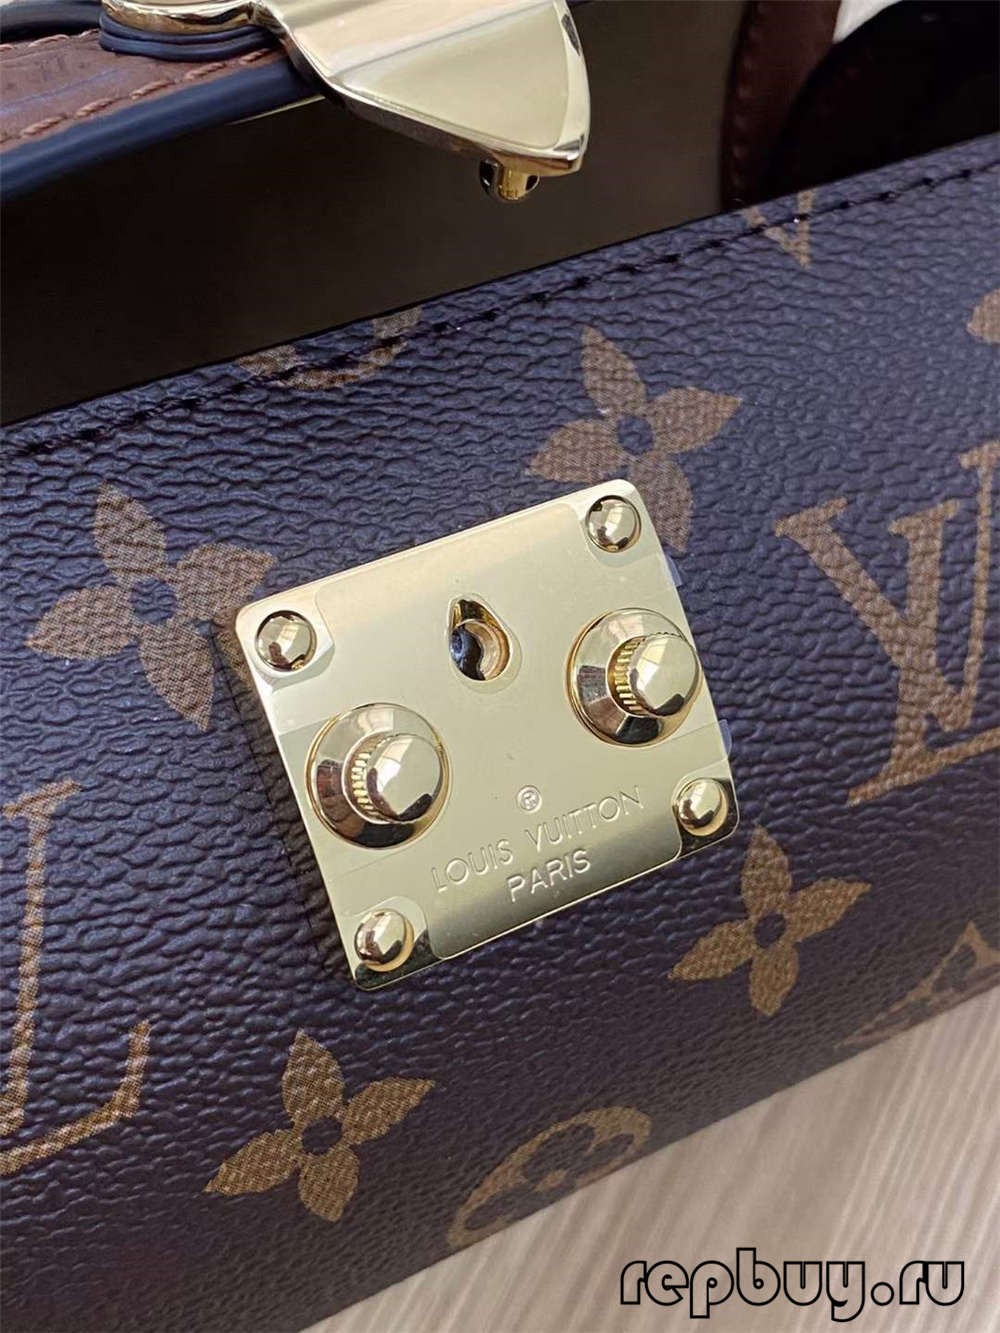 Louis Vuitton M57835 PAPILLON TRUNK အရည်အသွေးမြင့် ပုံတူအိတ်များ (2022 အပ်ဒိတ်)- အကောင်းဆုံး အရည်အသွေး အတု Louis Vuitton Bag အွန်လိုင်းစတိုး၊ ပုံစံတူ ဒီဇိုင်နာအိတ် ru